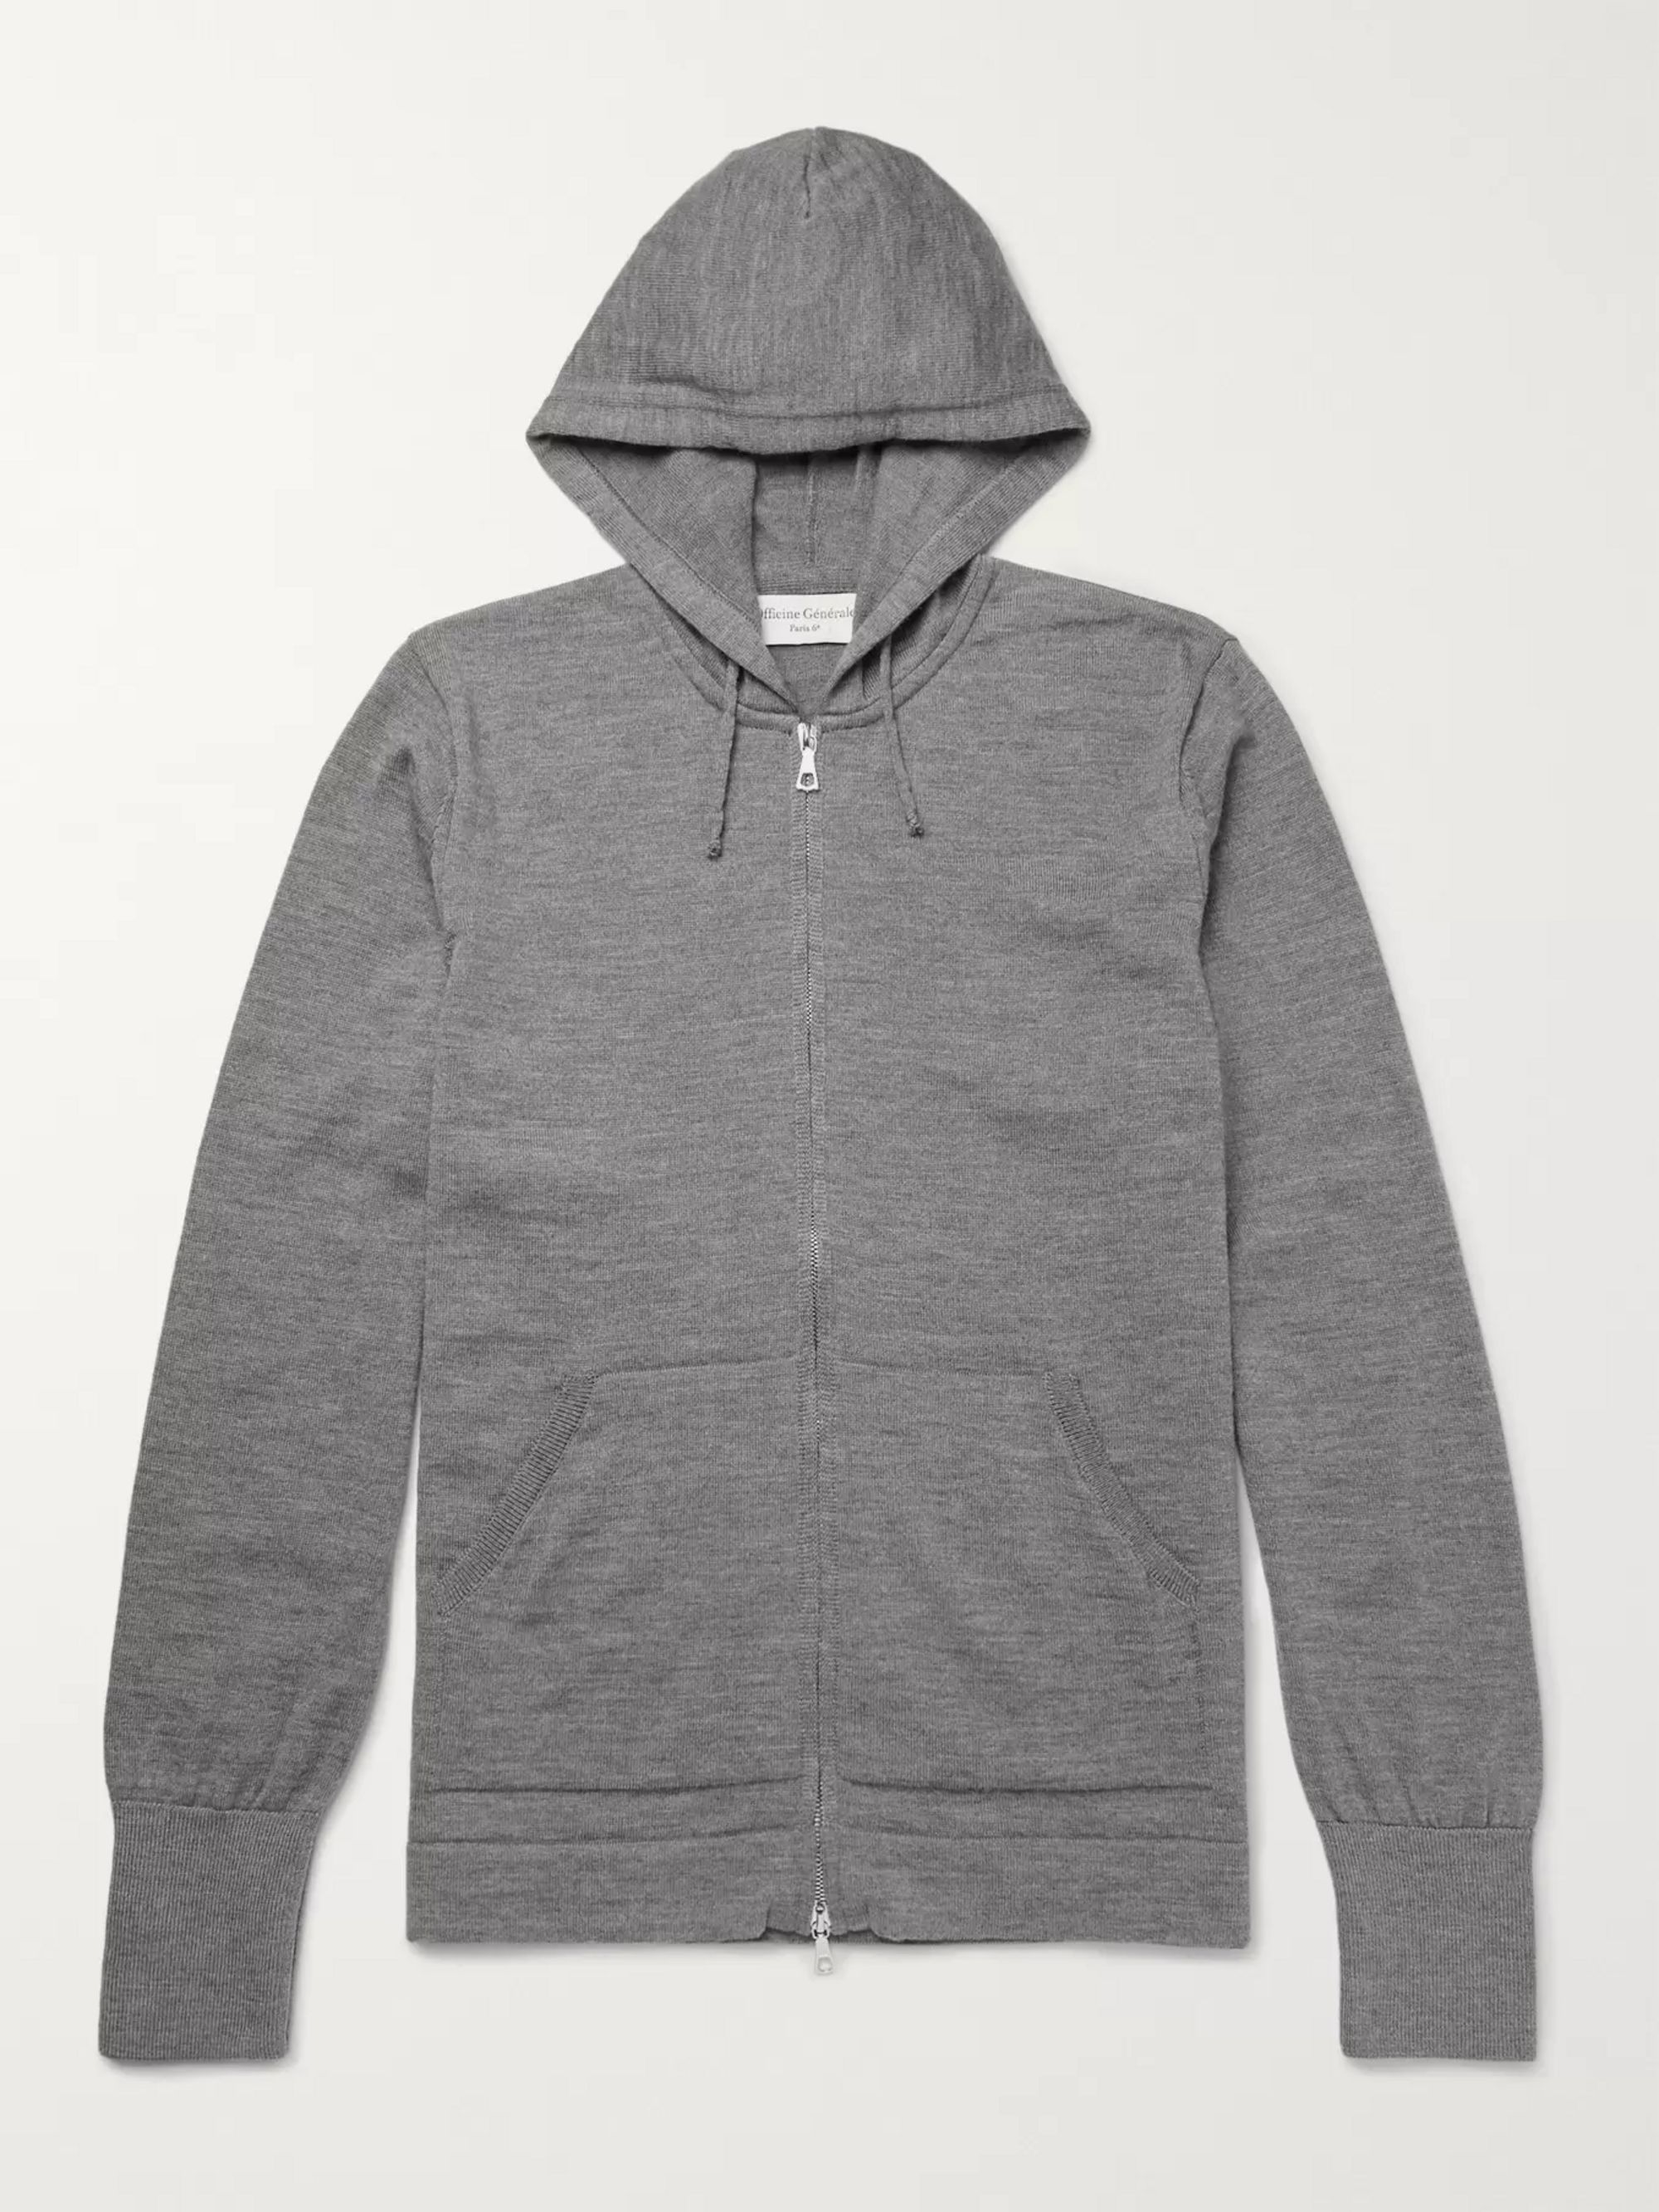 grey zip up hoodie mens